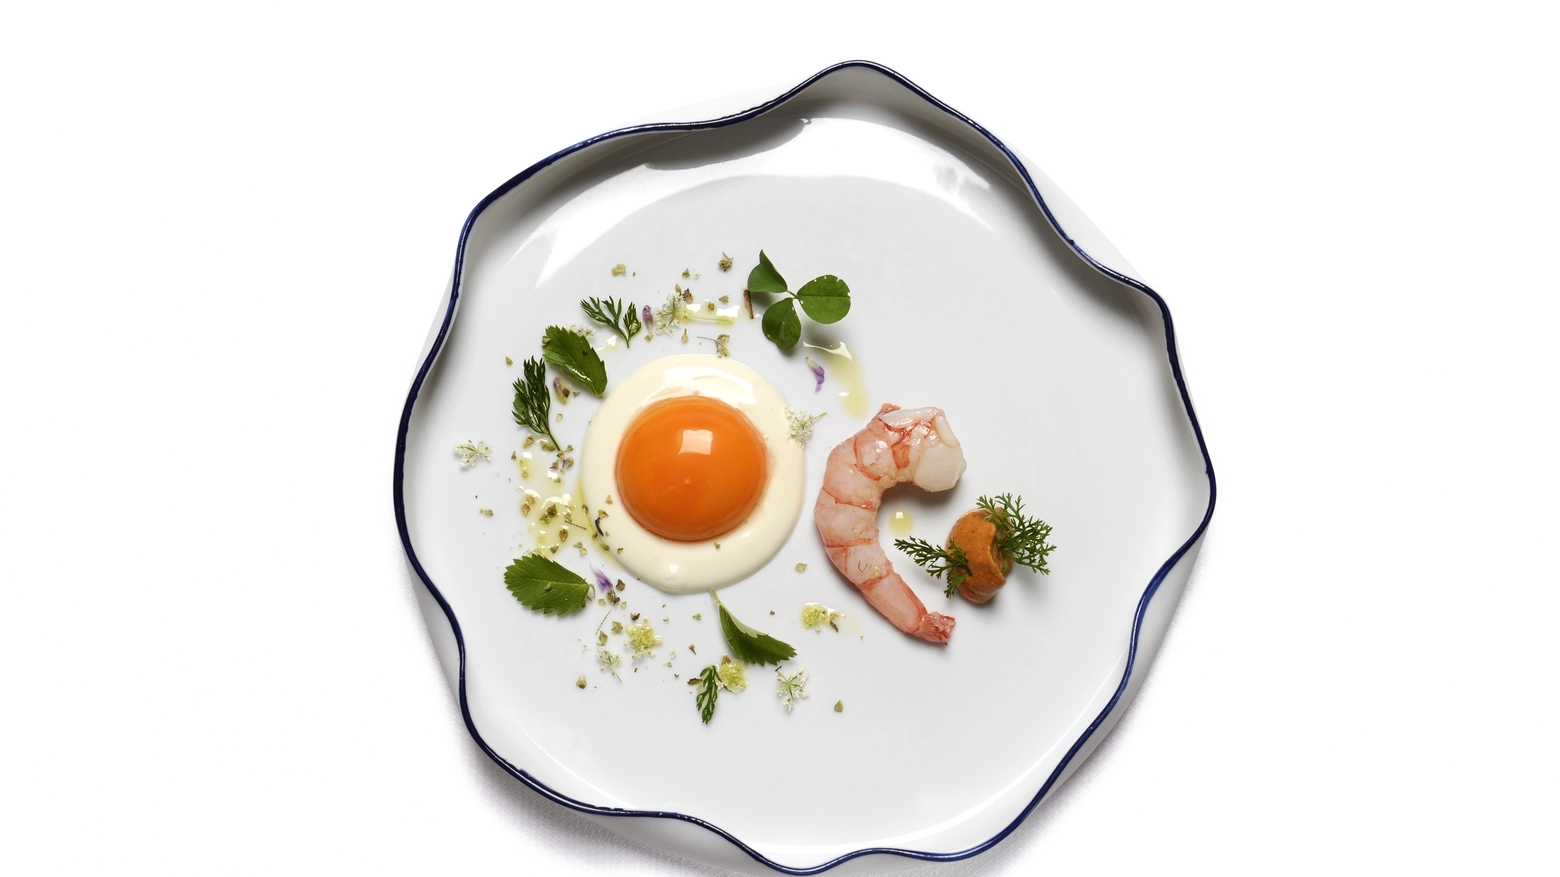 Gamberi ‘viola’ di Sanremo, uovo morbido di fattoria, misticanza di prato e profumi medite